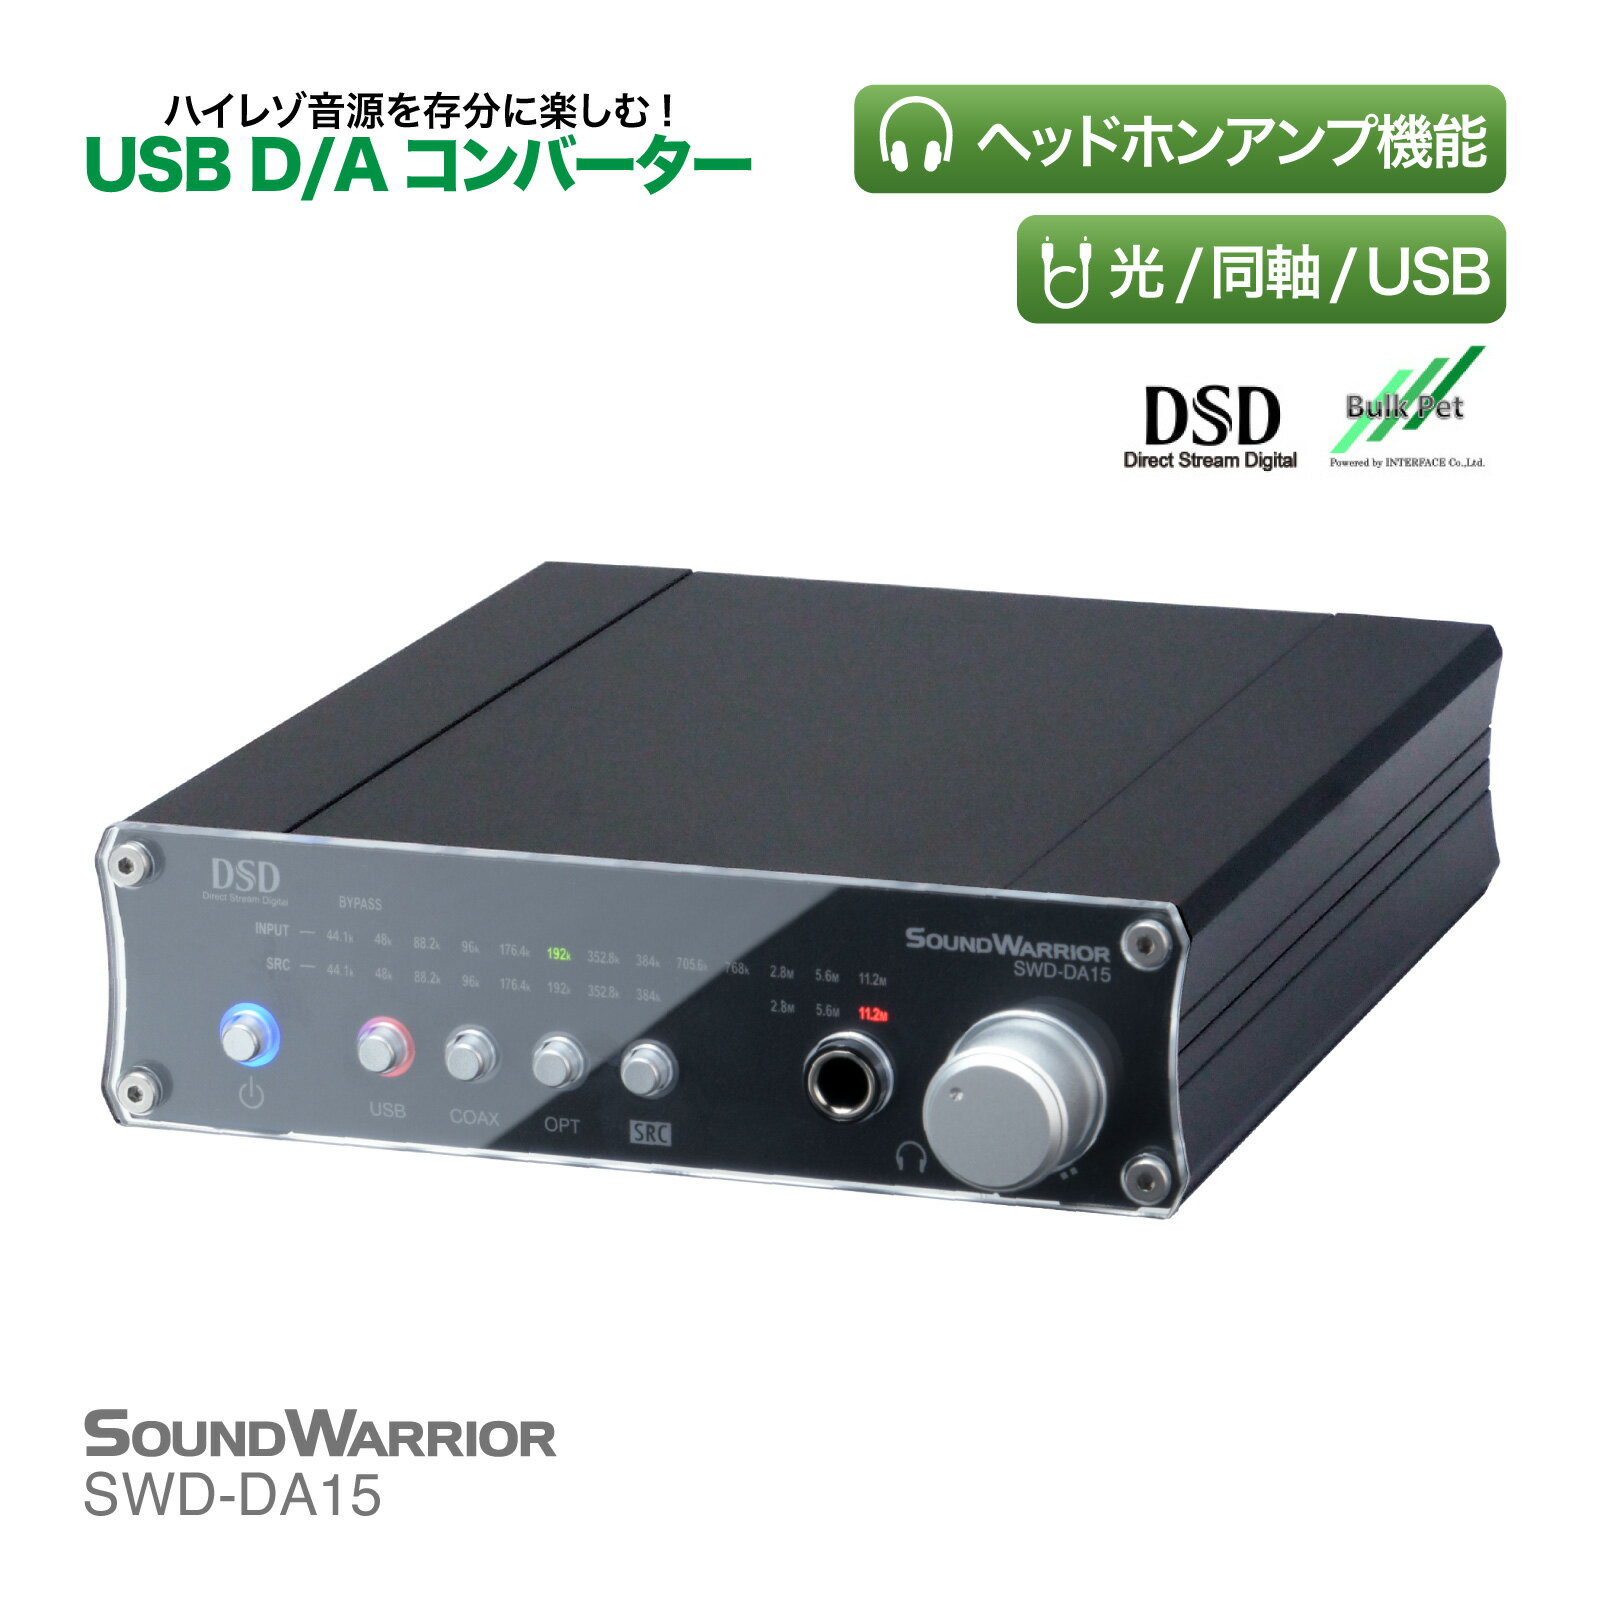 高性能 D/A コンバーター | SWD-DA15 SW-LIVESET1-WA | コンポ DAC アンプ 光ケーブル USB 音響機器 ac dac 同軸ケーブル コネクター ハイレゾ音源 CDコンポ プリアンプ 日本製 ロスレス オーディオコンポ 高性能 1